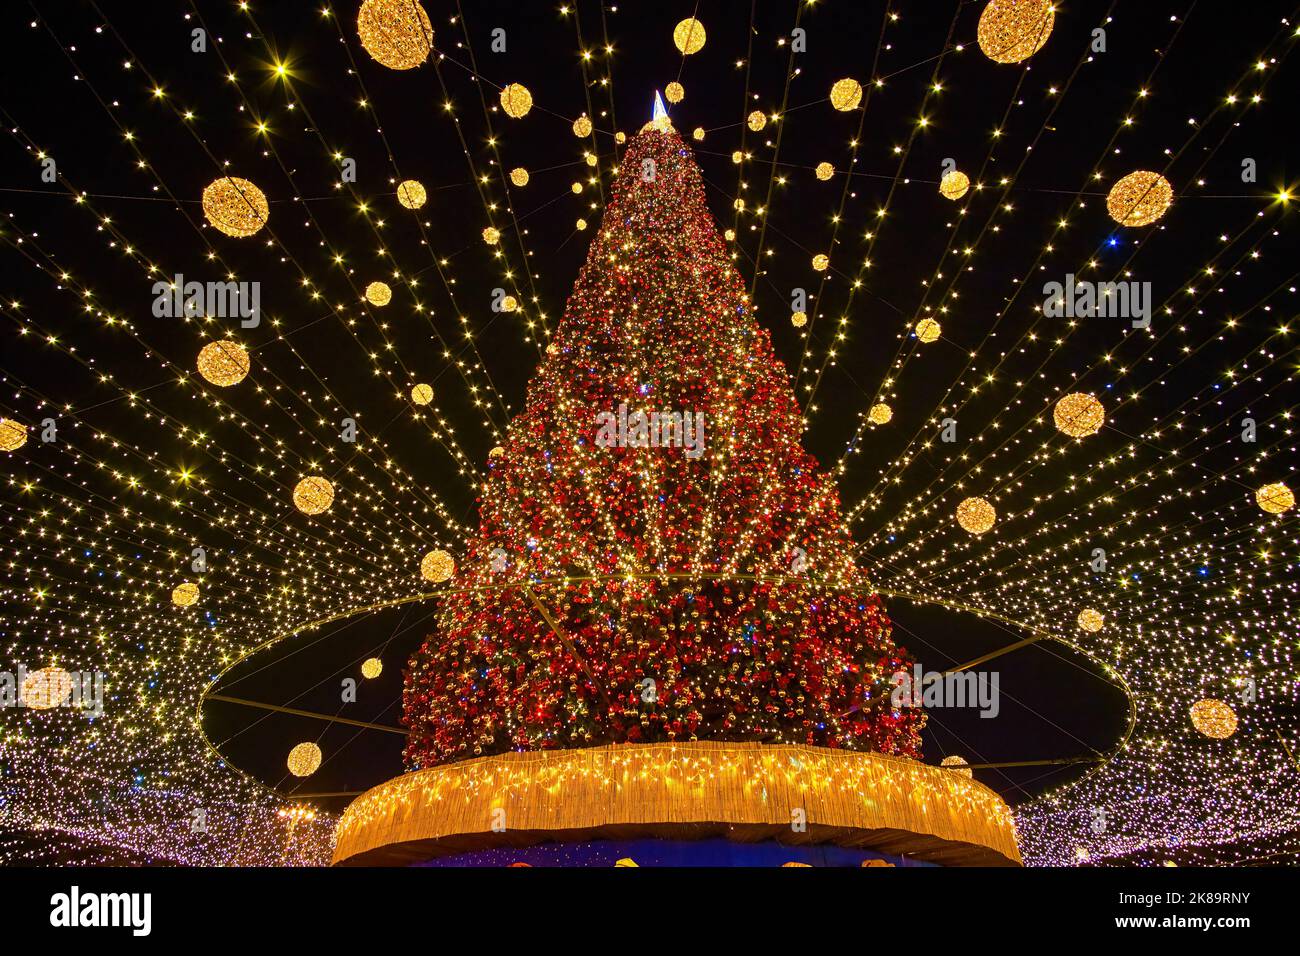 La Plaza de Santa Sofía está ricamente decorada para la celebración de Navidad con las luces brillantes y las guirnaldas de colores en el Árbol de Navidad, Kiev, Ucrania Foto de stock